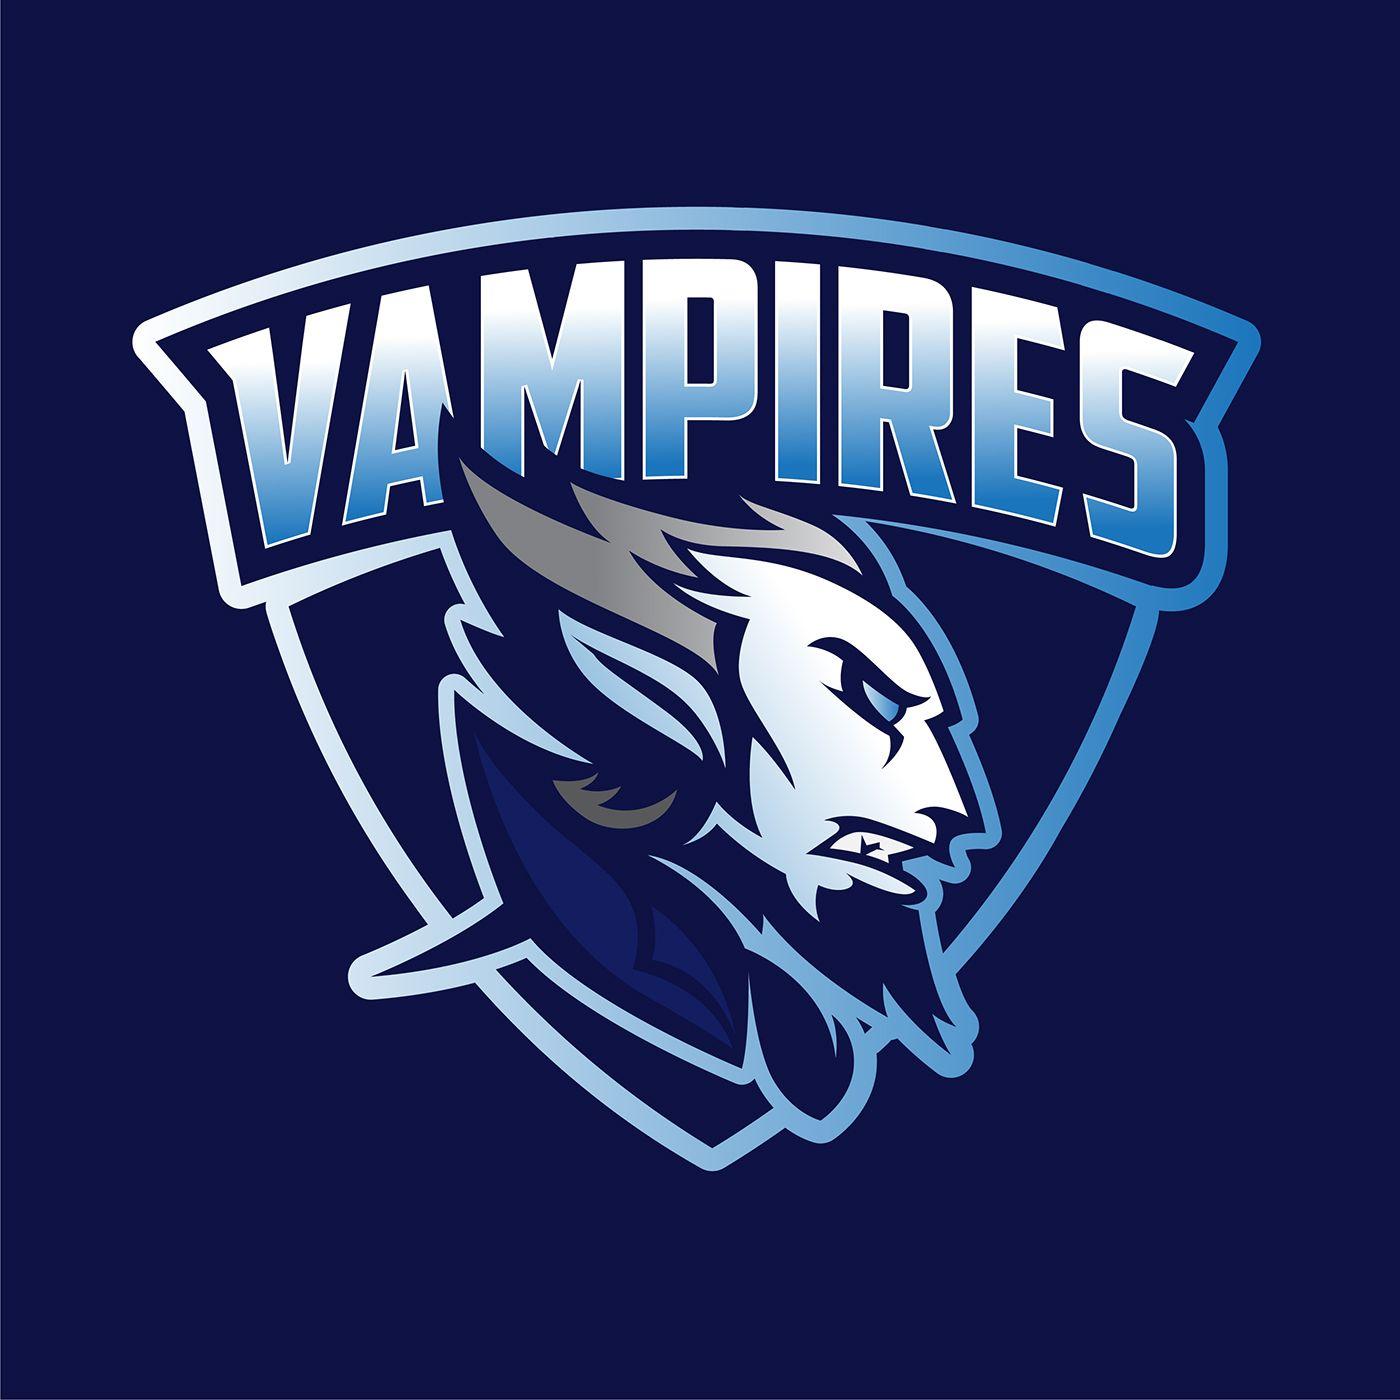 Vampire Logo - Vampires. Logo concept. For sale. on Behance